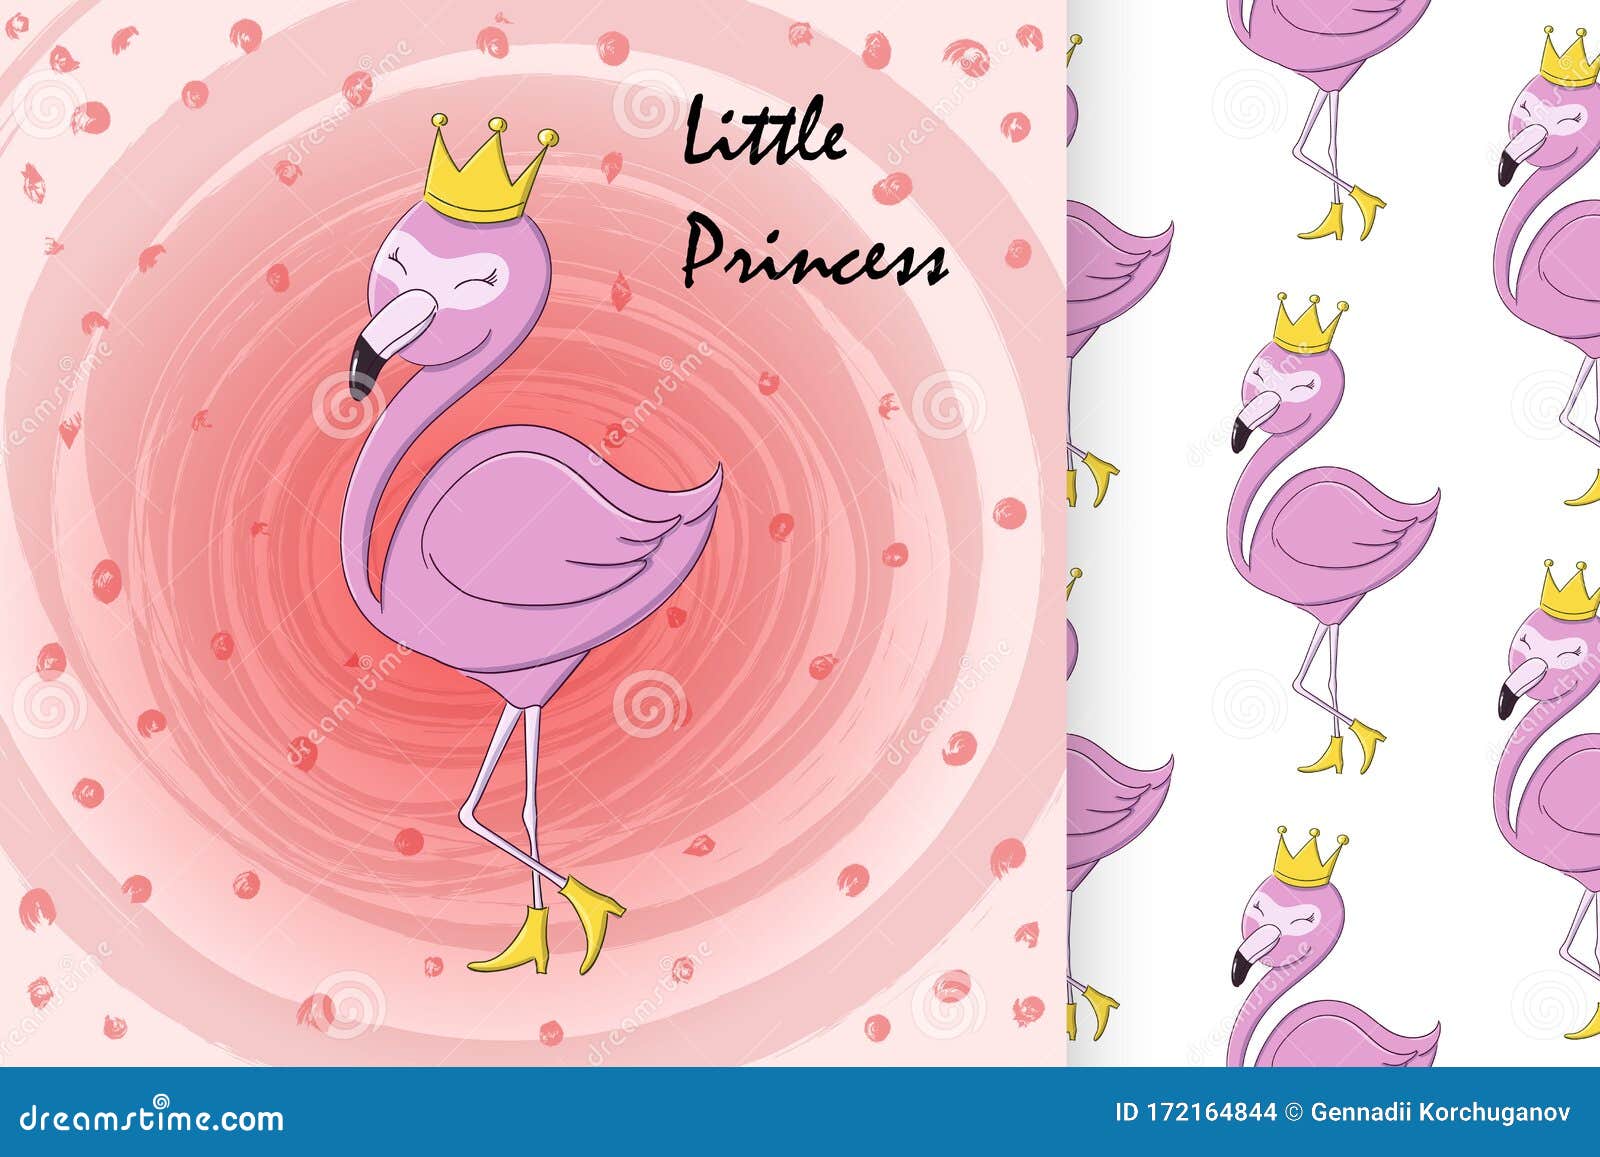 Illustrations Stock Queen Flamingo Illustrations, & Dreamstime 304 Clipart - – Vectors Stock Flamingo Queen